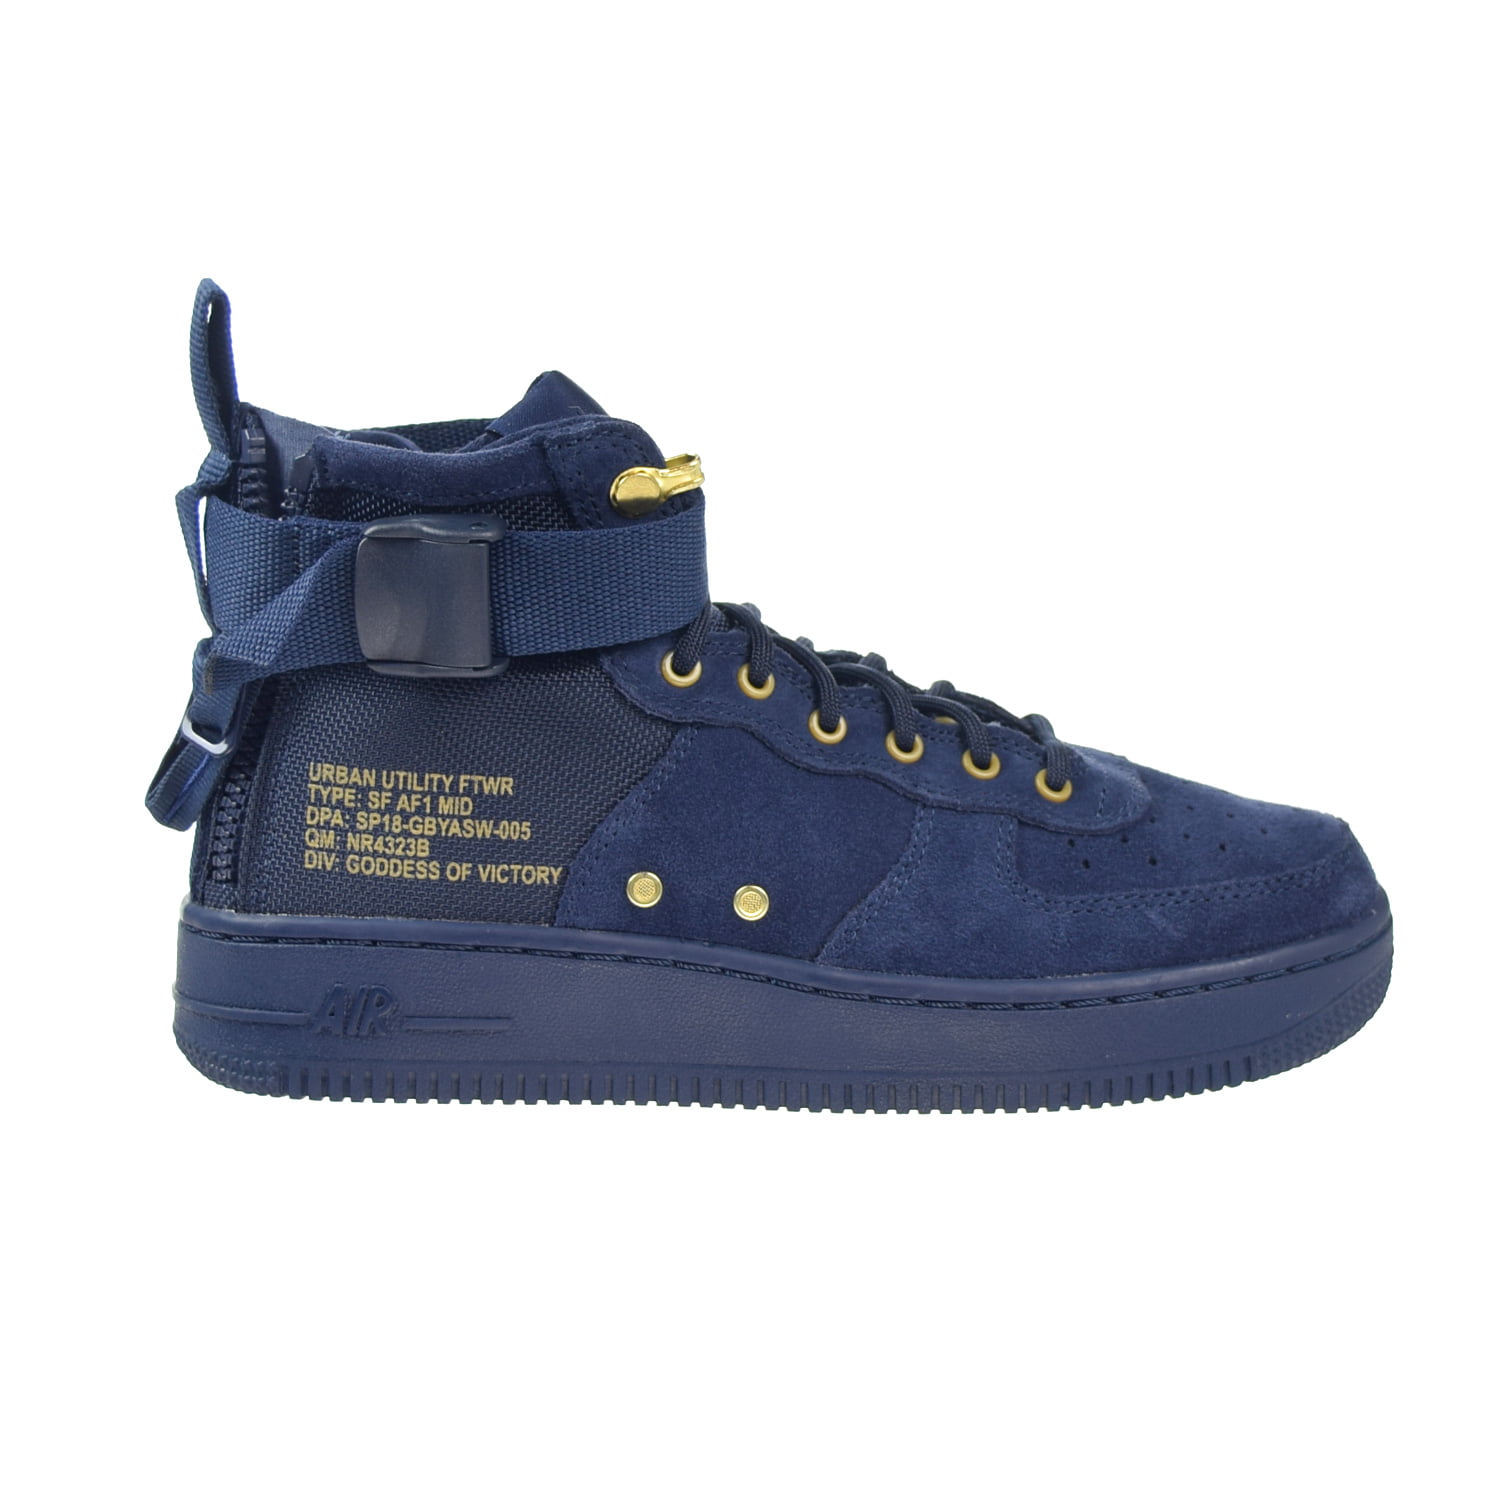 Nike SF AF1 Air MID Big Kids Shoes Blue/Black aj0424-400 Walmart.com